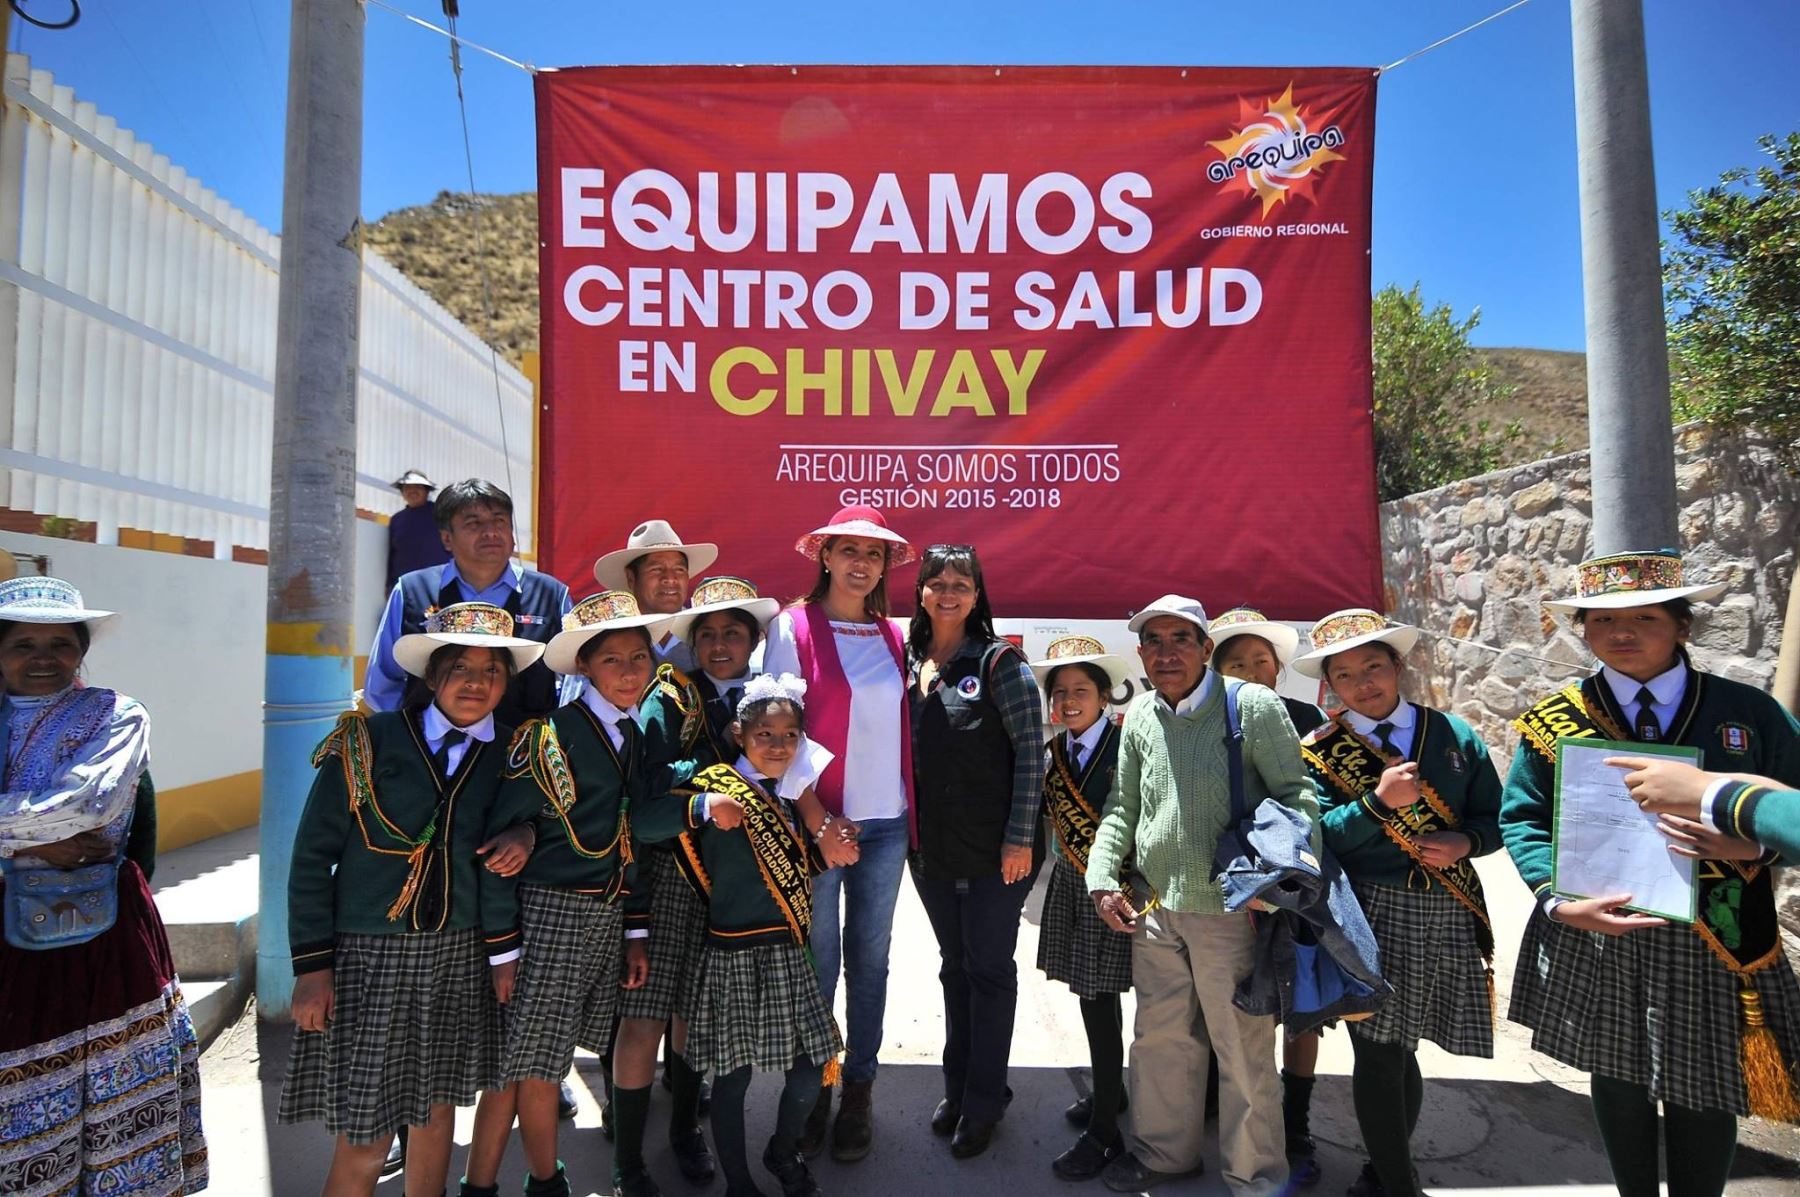 Gobernadora regional de Arequipa, Yamila Osorio, inaugura Centro de Salud de Chivay, con una inversión de 4’934,714 soles.